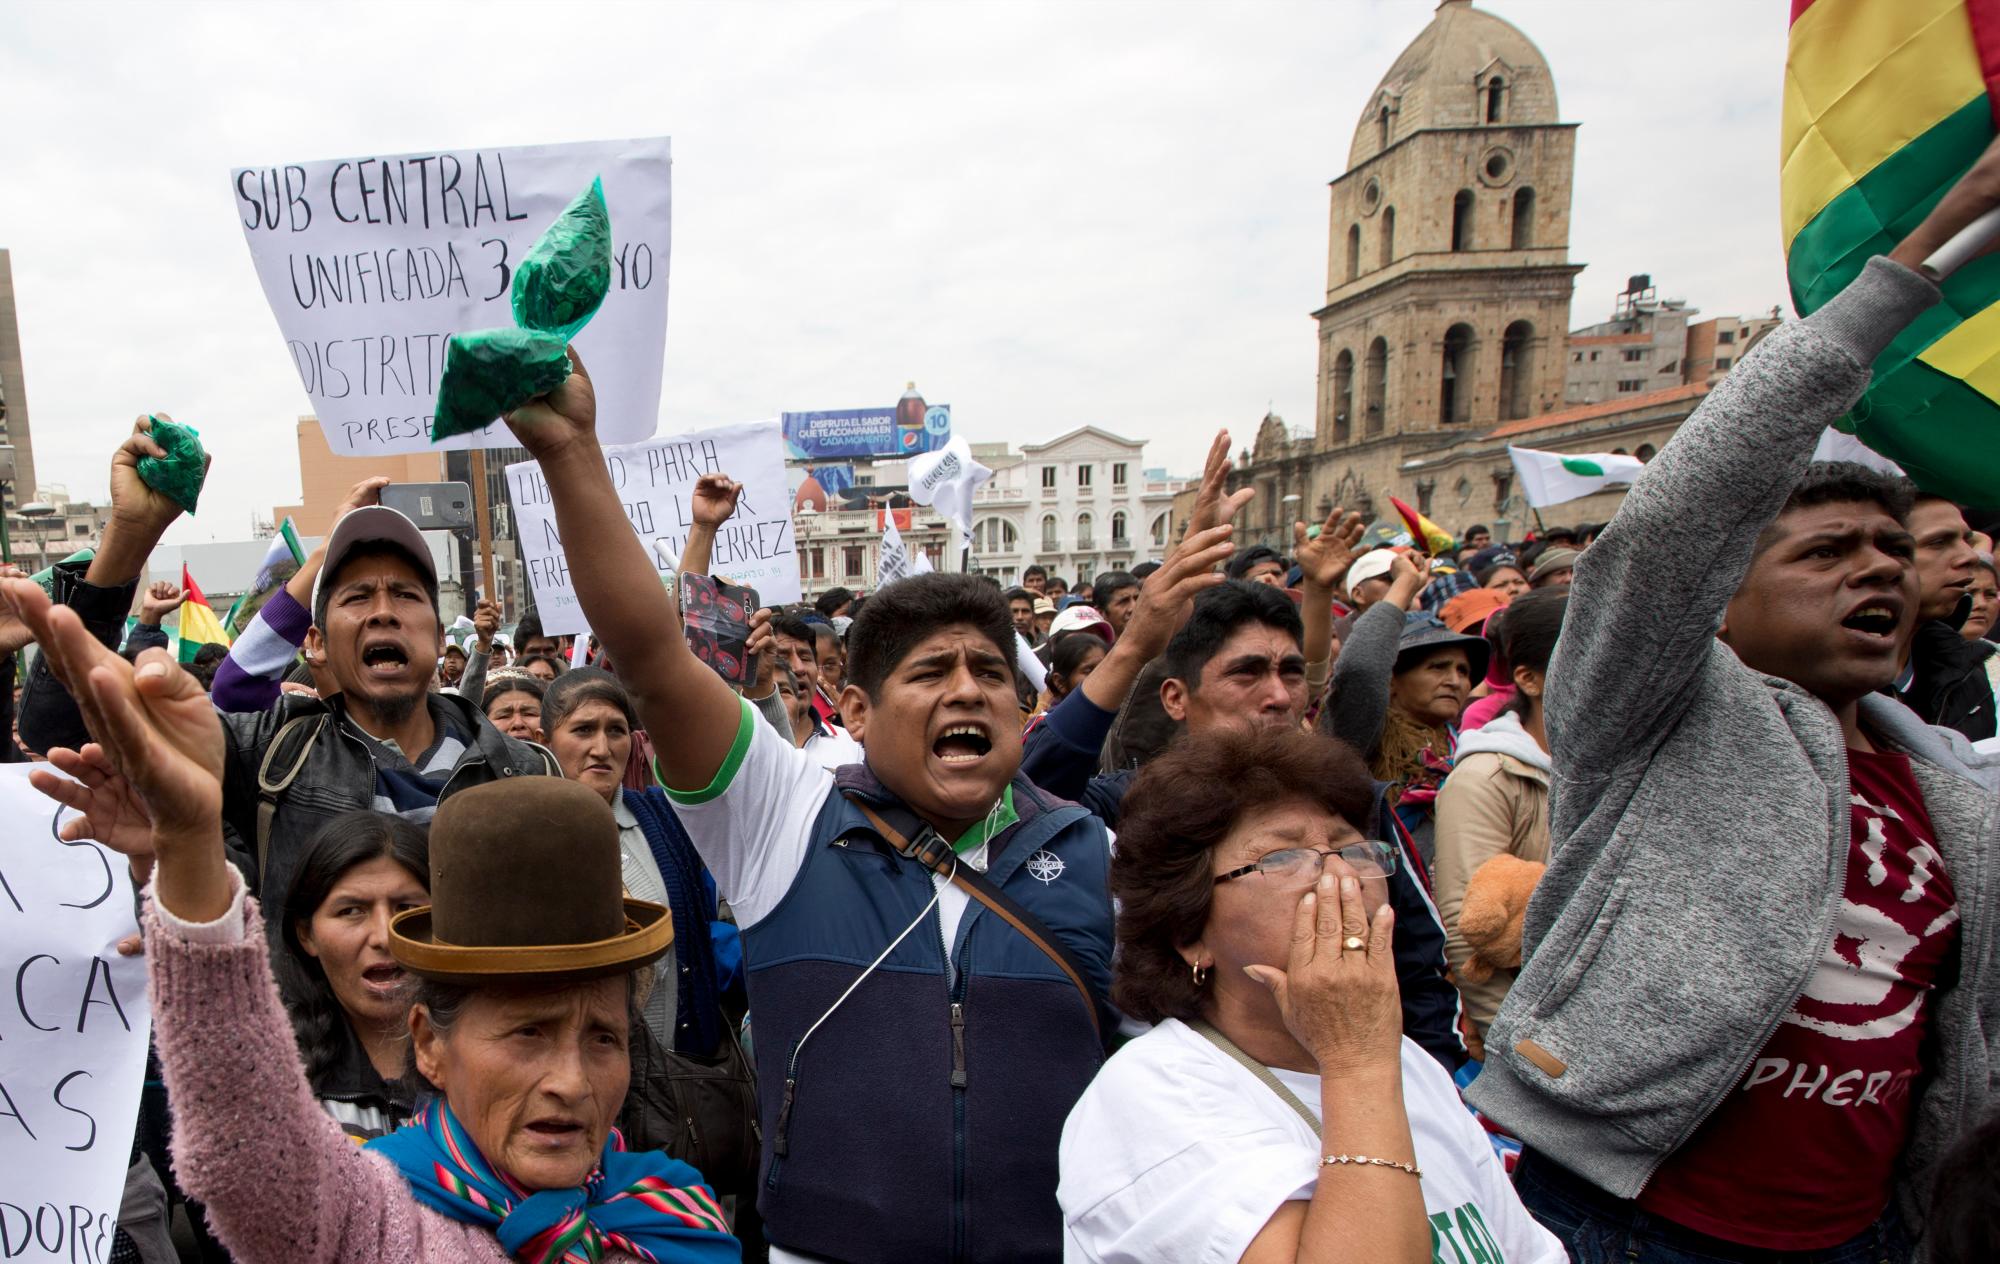 En imagen del martes 19 de marzo de 2019, agricultores de coca lanzan consignas contra el presidente boliviano Evo Morales durante el Gran Acullico, en La Paz, Bolivia. Miles de agricultores de coca realizaron una protesta para exigir la liberación de su líder encarcelado Franklin Gutiérrez, y para manifestarse en contra de las restricciones al cultivo de coca impuestas por el gobierno de Morales en 2017.